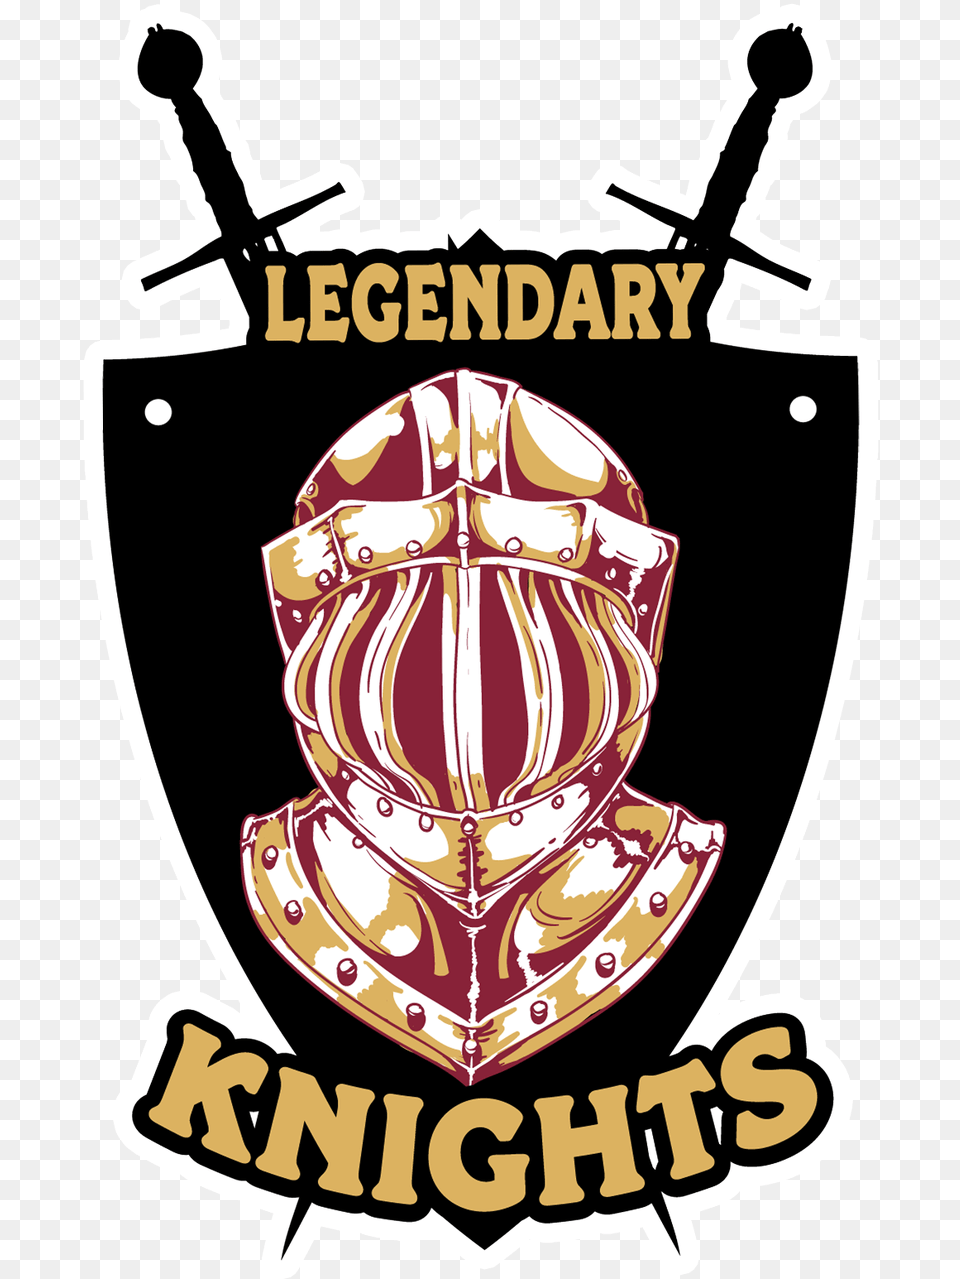 Legendary Knights Copy Illustration, Armor, Symbol, Emblem, Adult Free Png Download